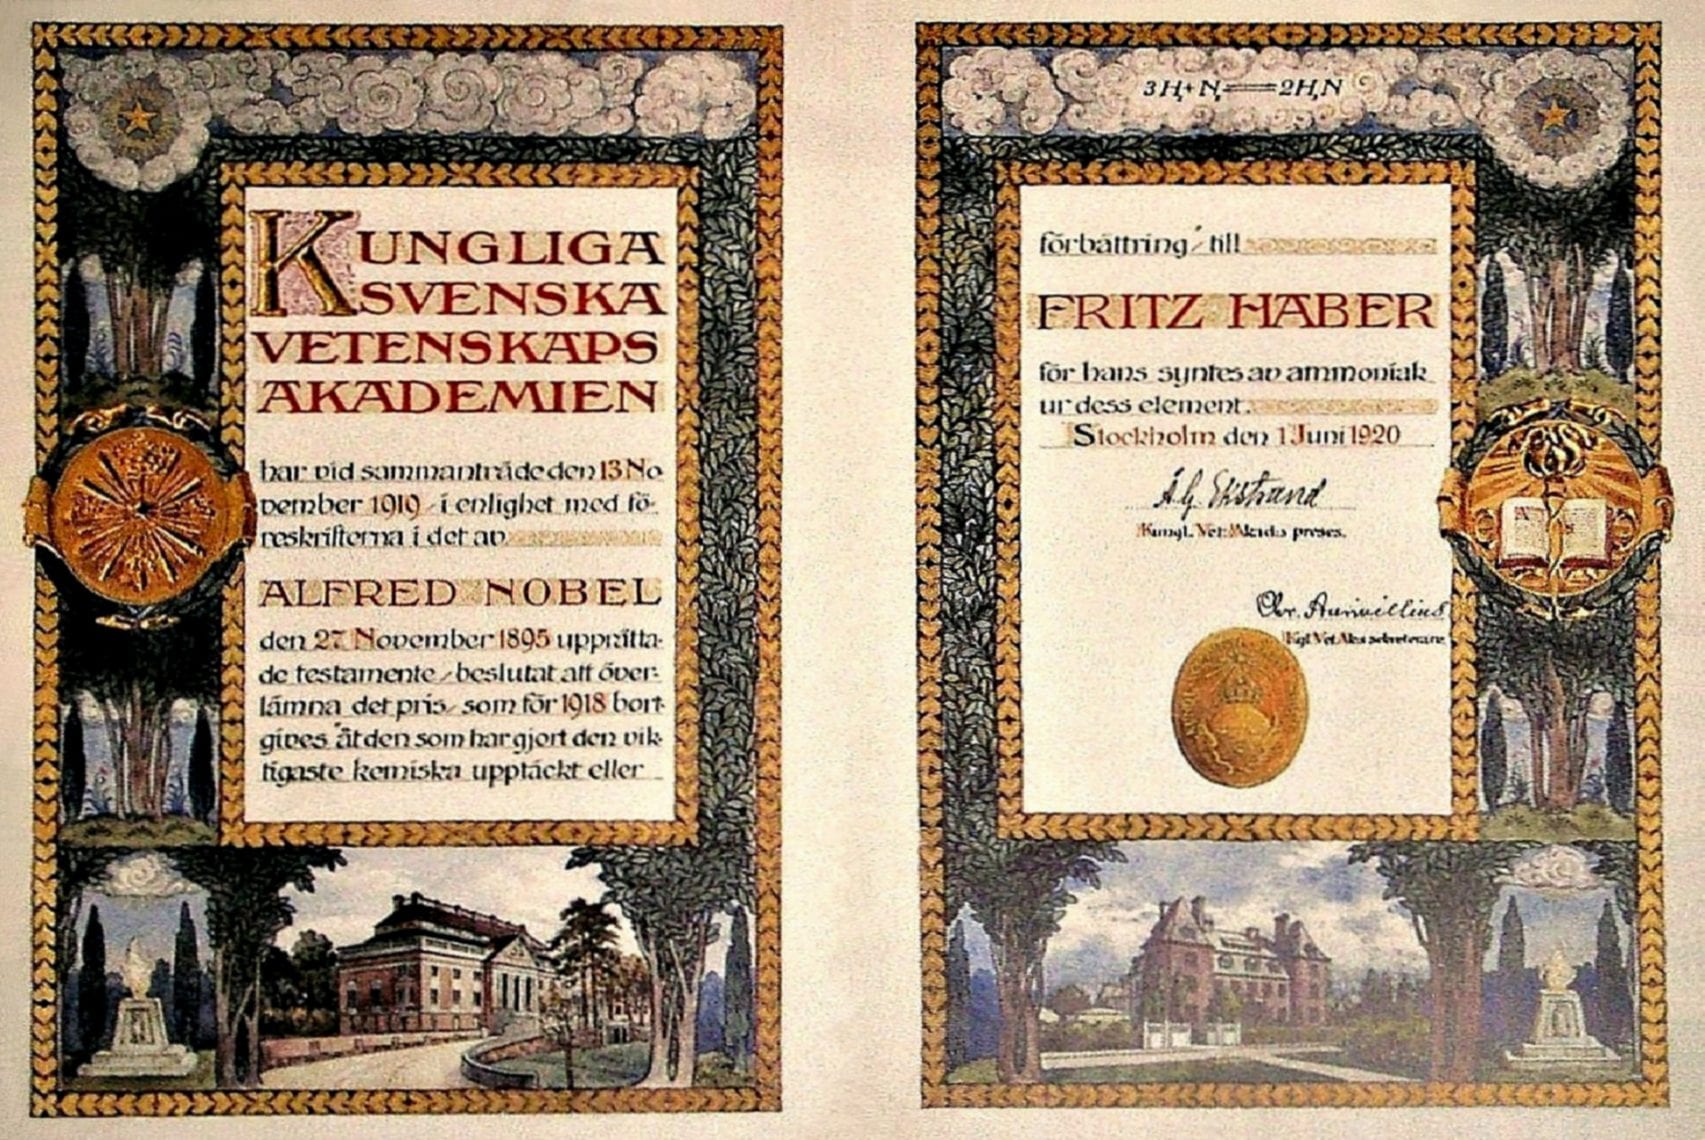 כתב הזכייה של פריץ הבר בפרס נובל לכימיה, 1918